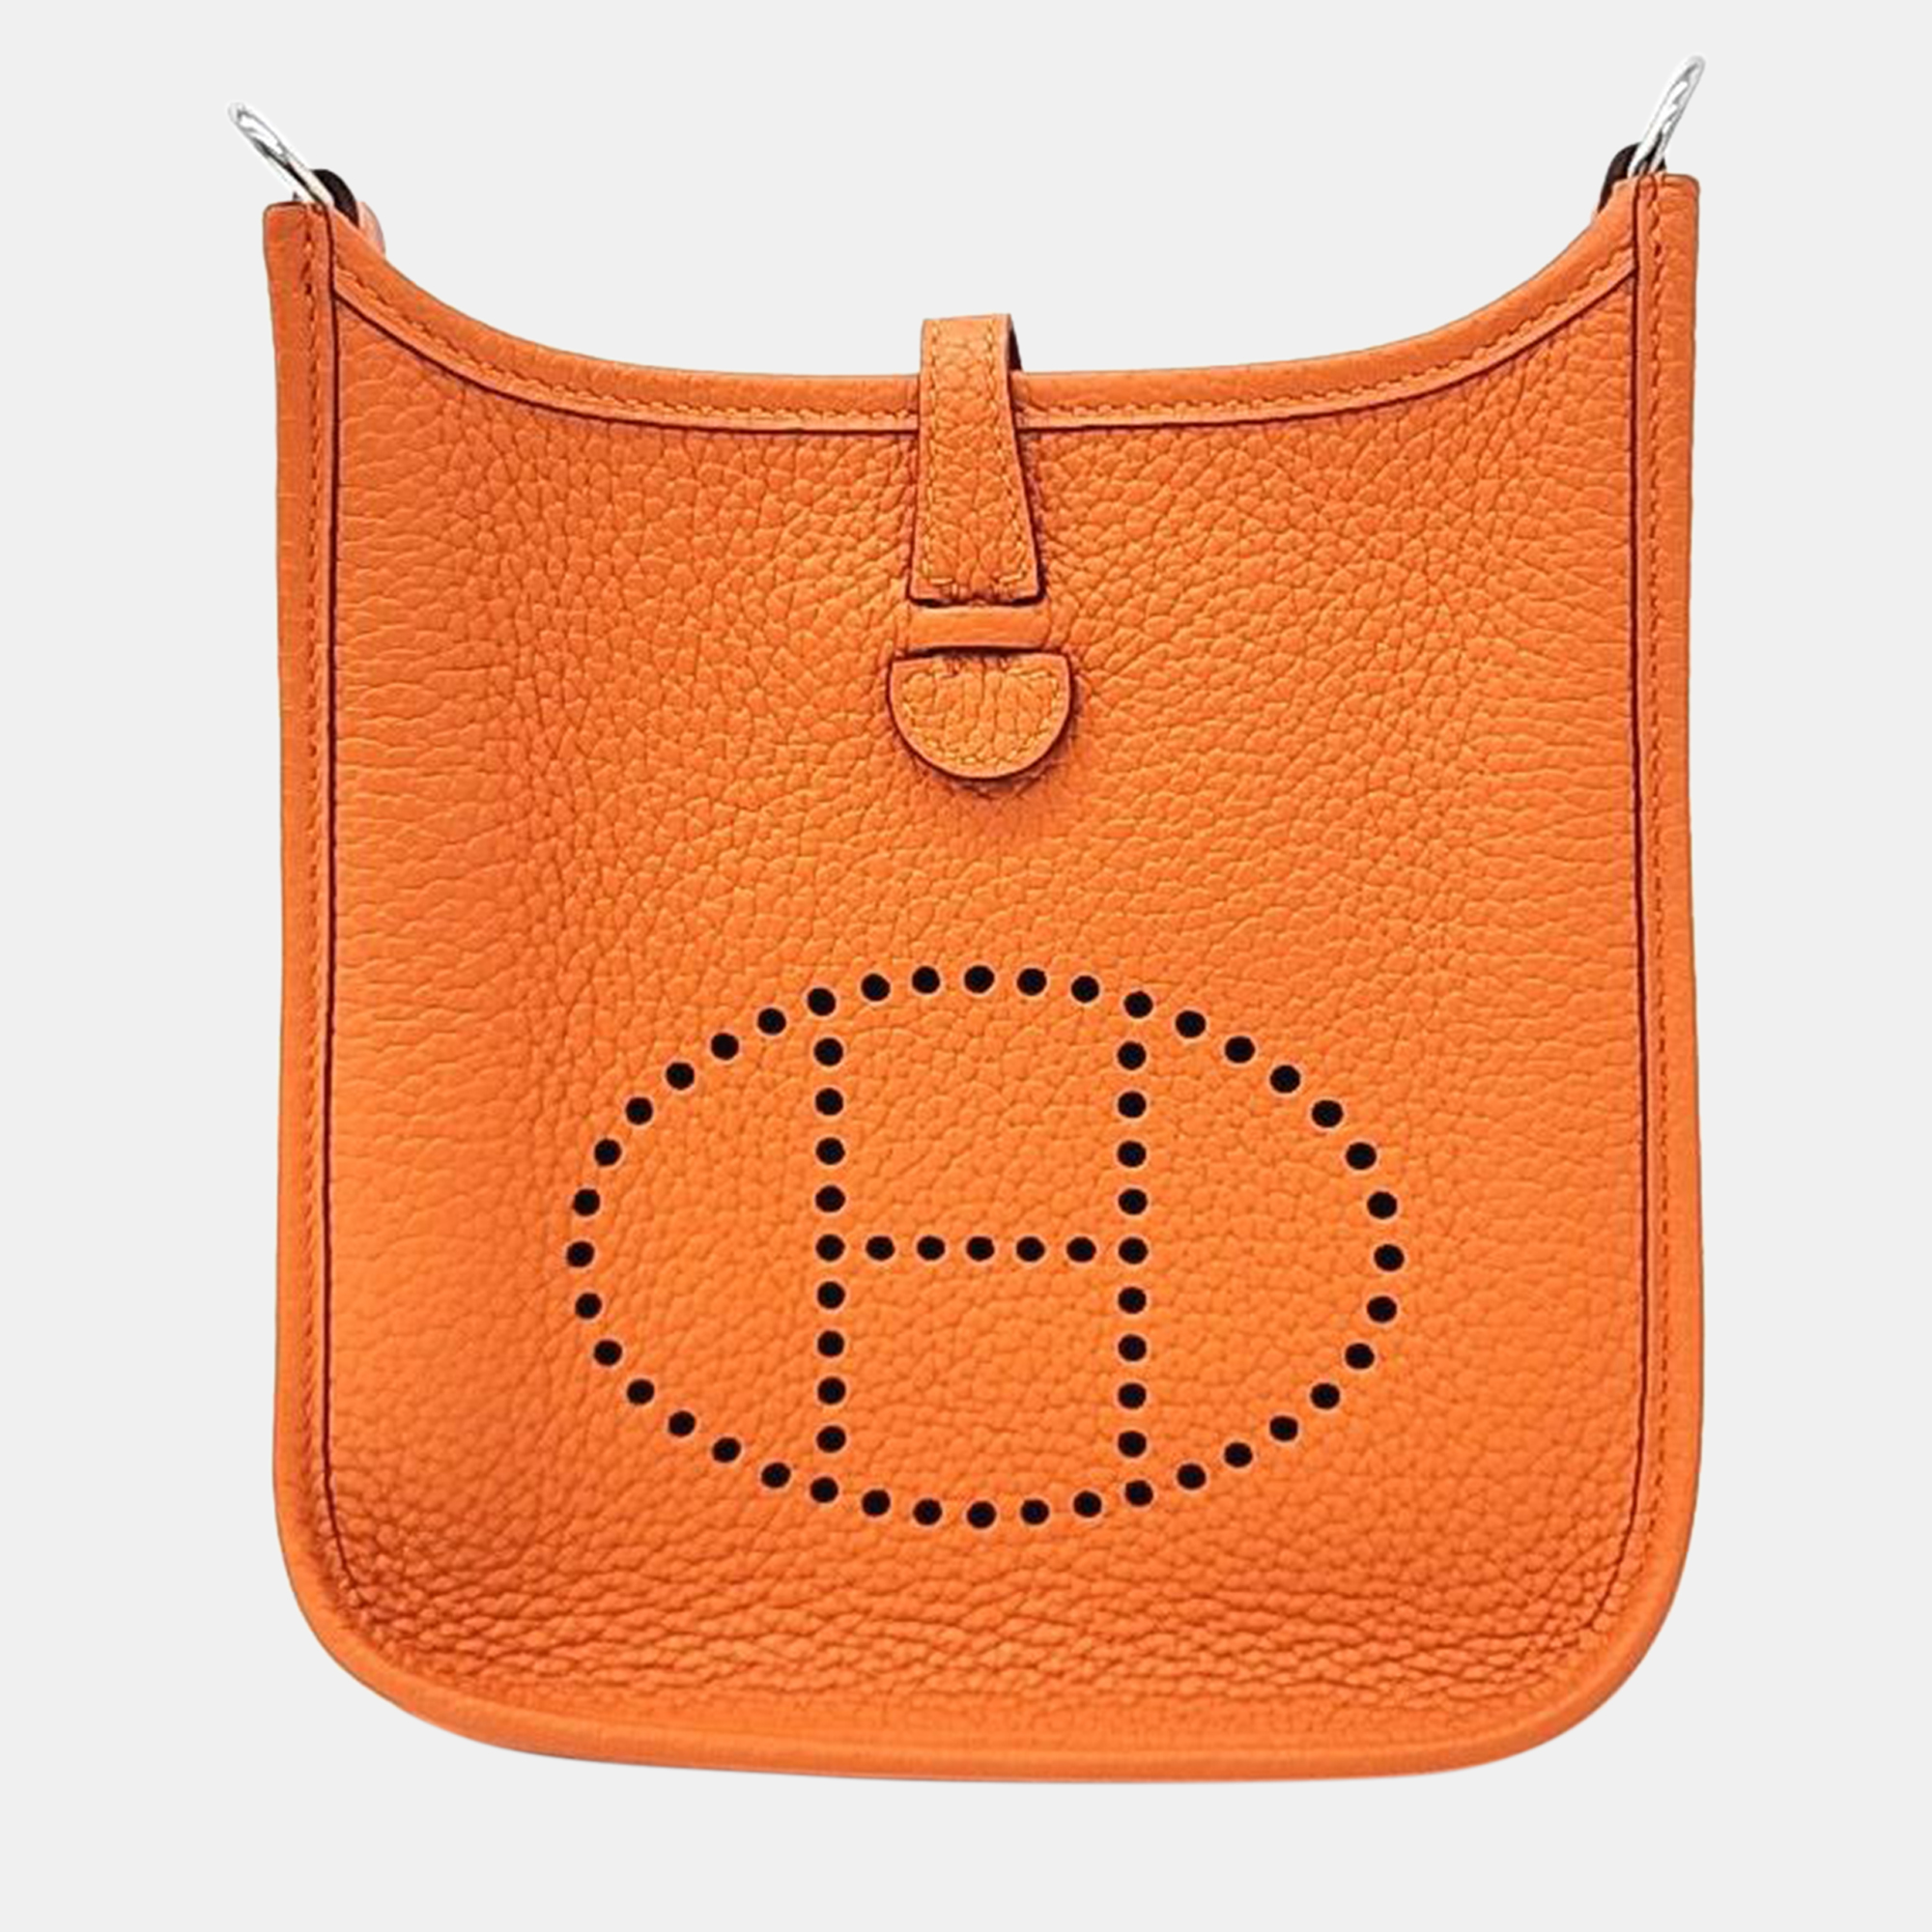 Hermes orange leather evelyn 16 bag